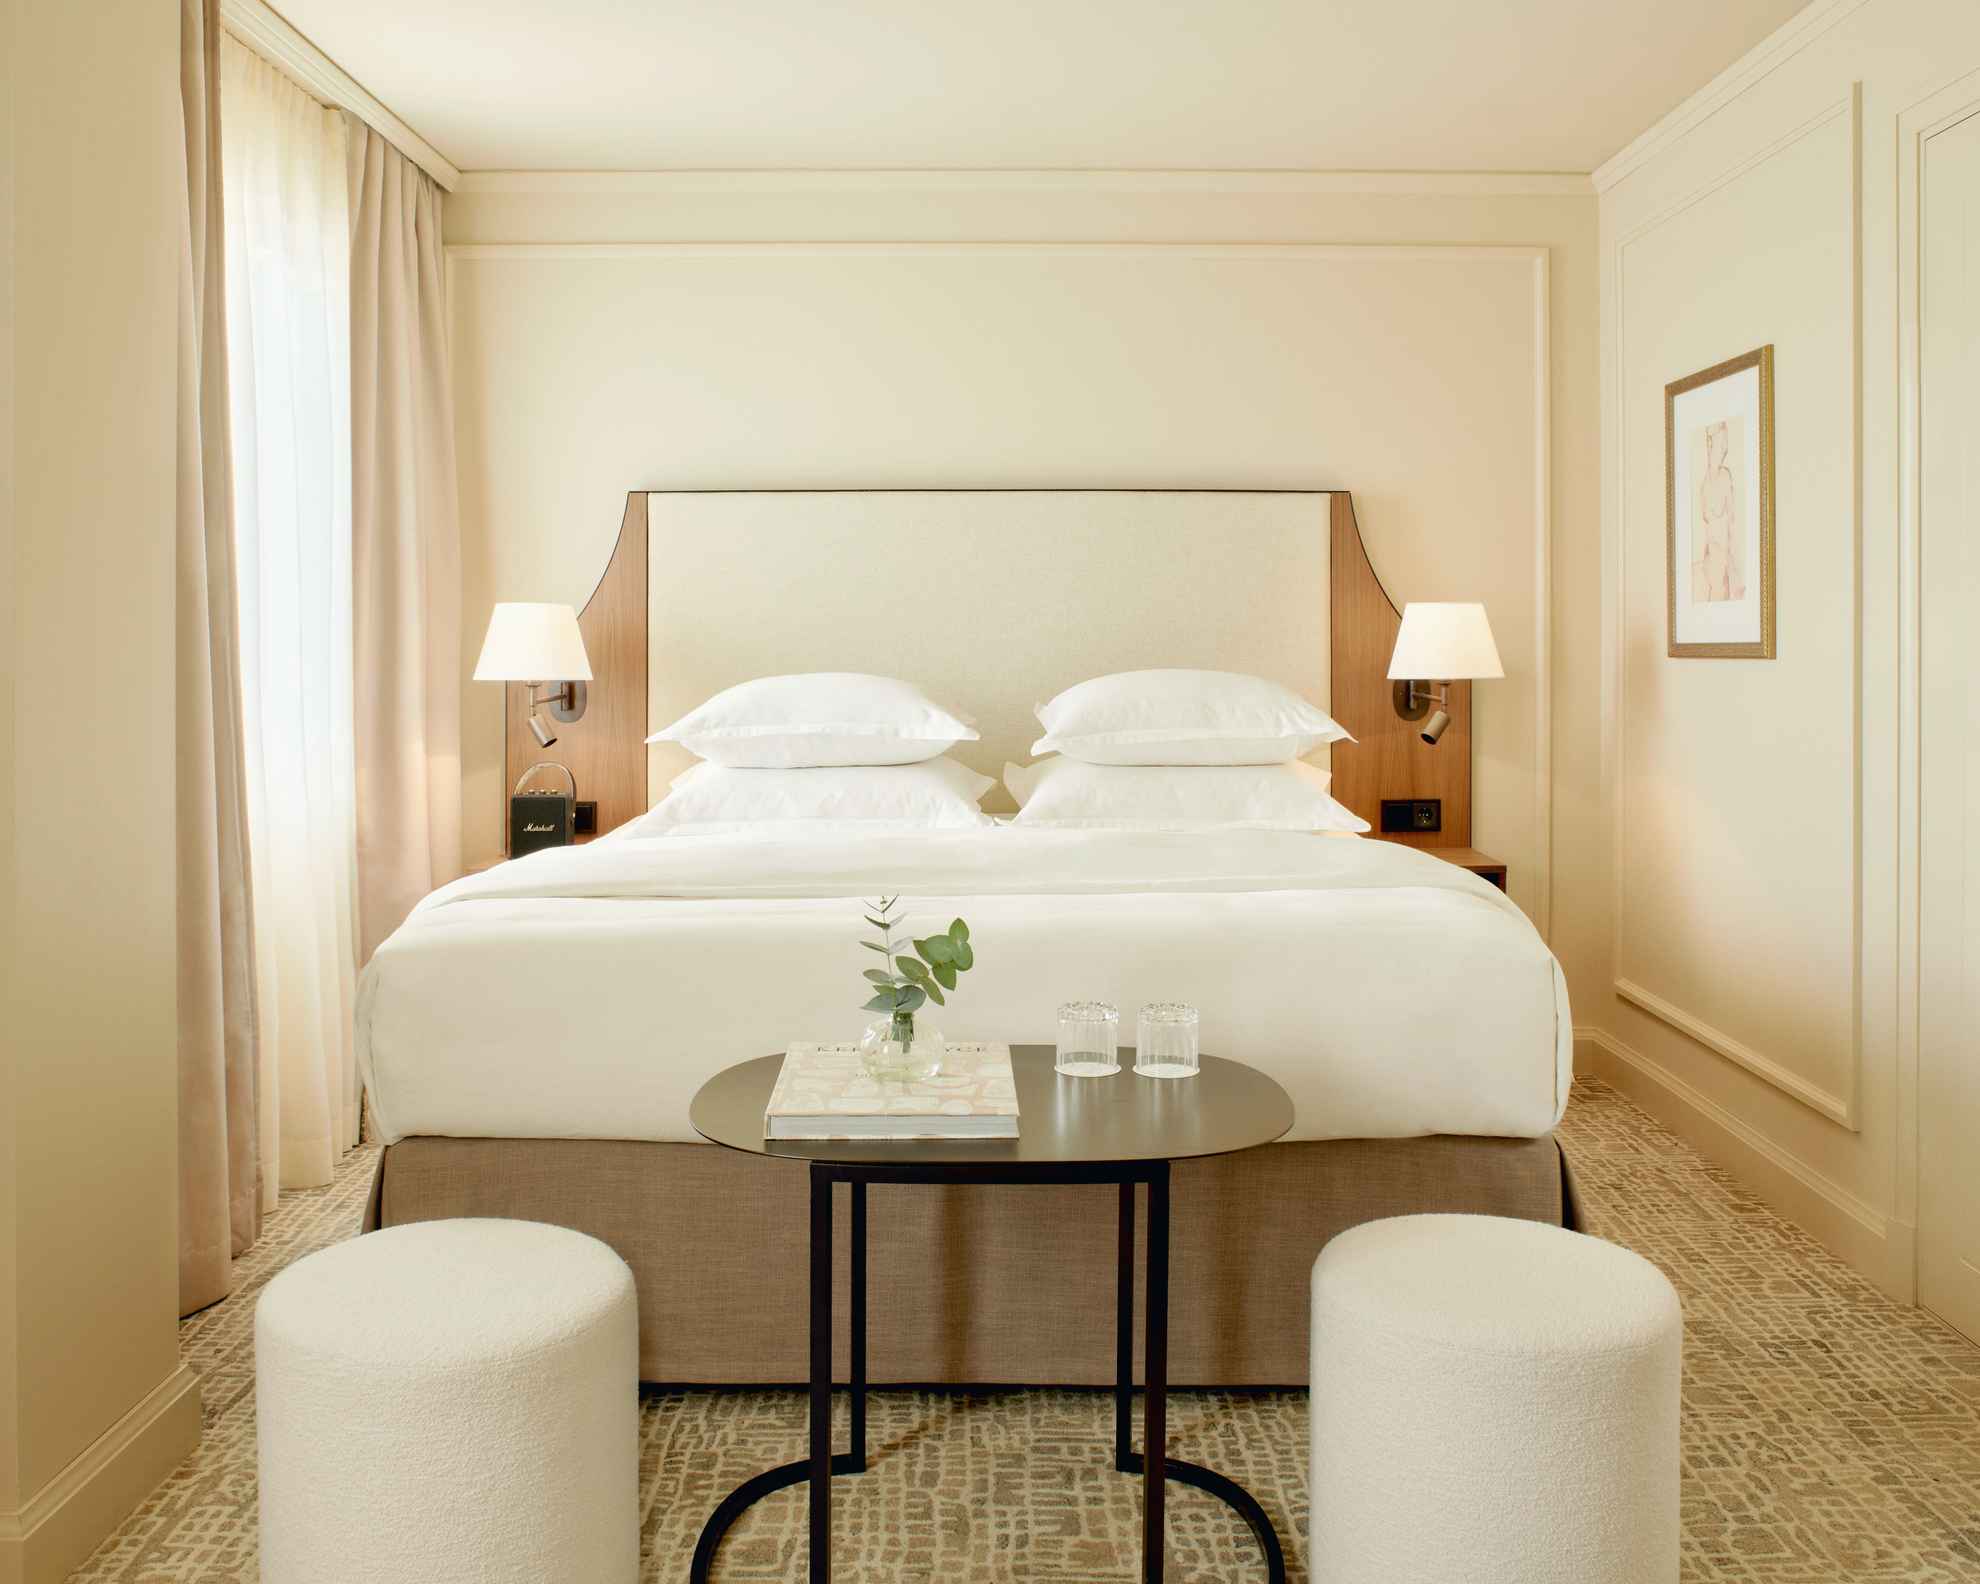 Chambre d'hôtel à la Villa Dahlia. La chambre a des murs clairs, un lit double, une petite table foncée et deux sièges blancs.